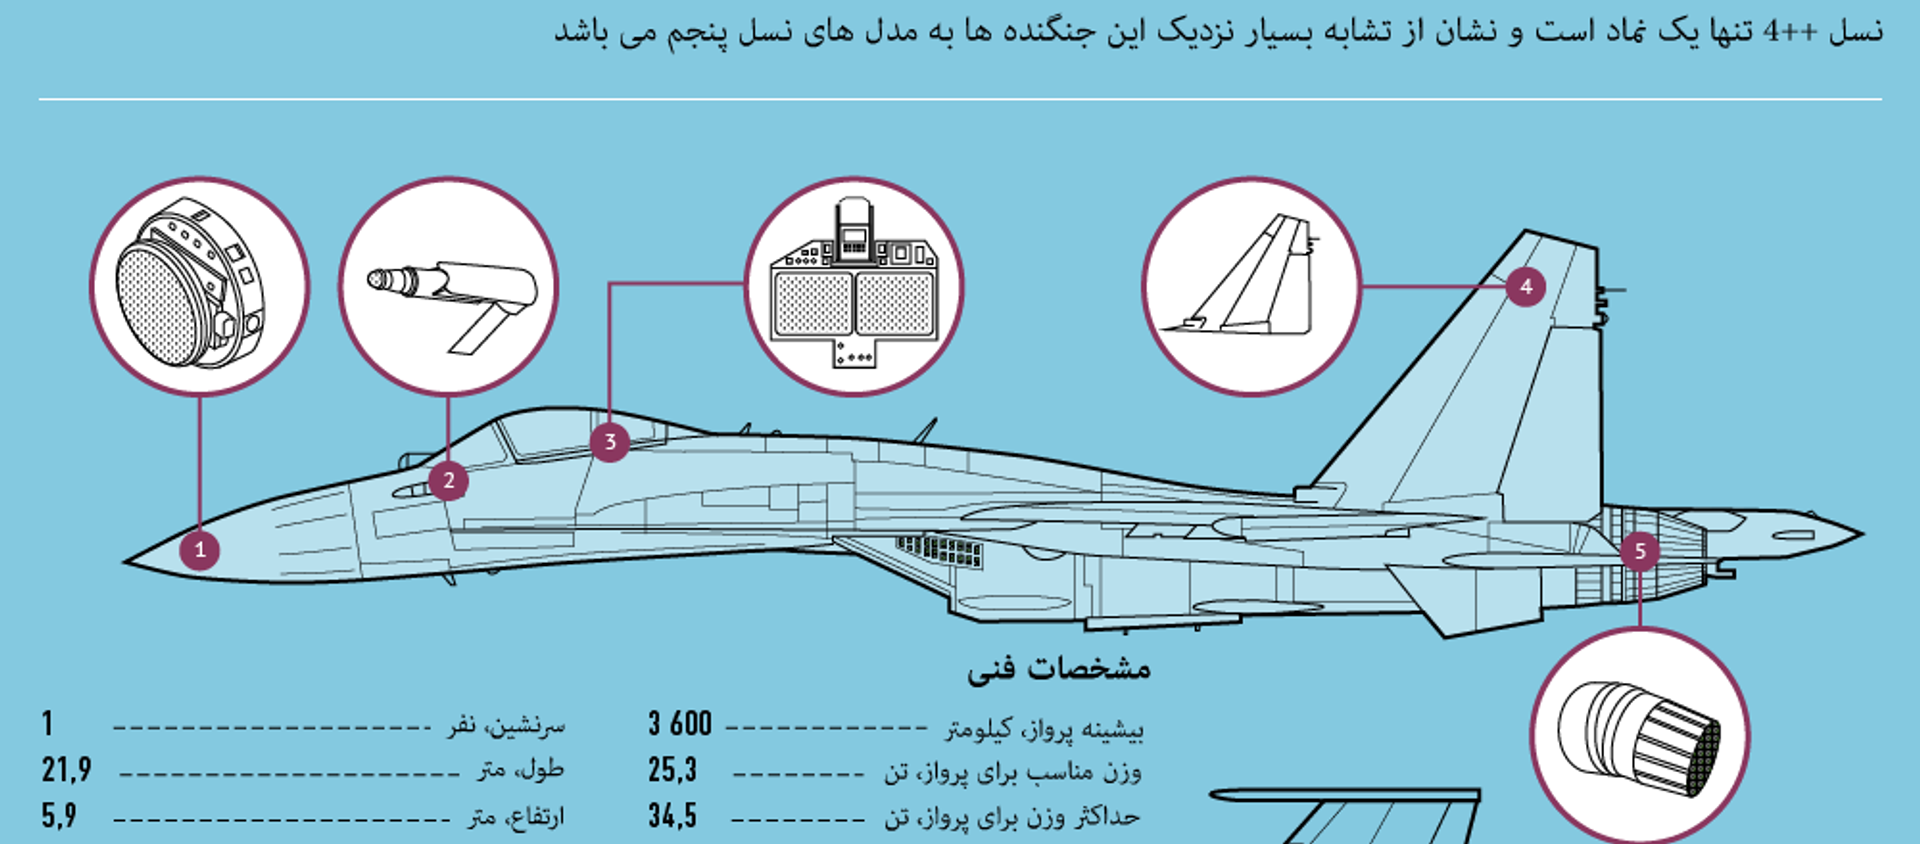 جنگنده سوخو-35 اس - اسپوتنیک ایران  , 1920, 10.07.2015